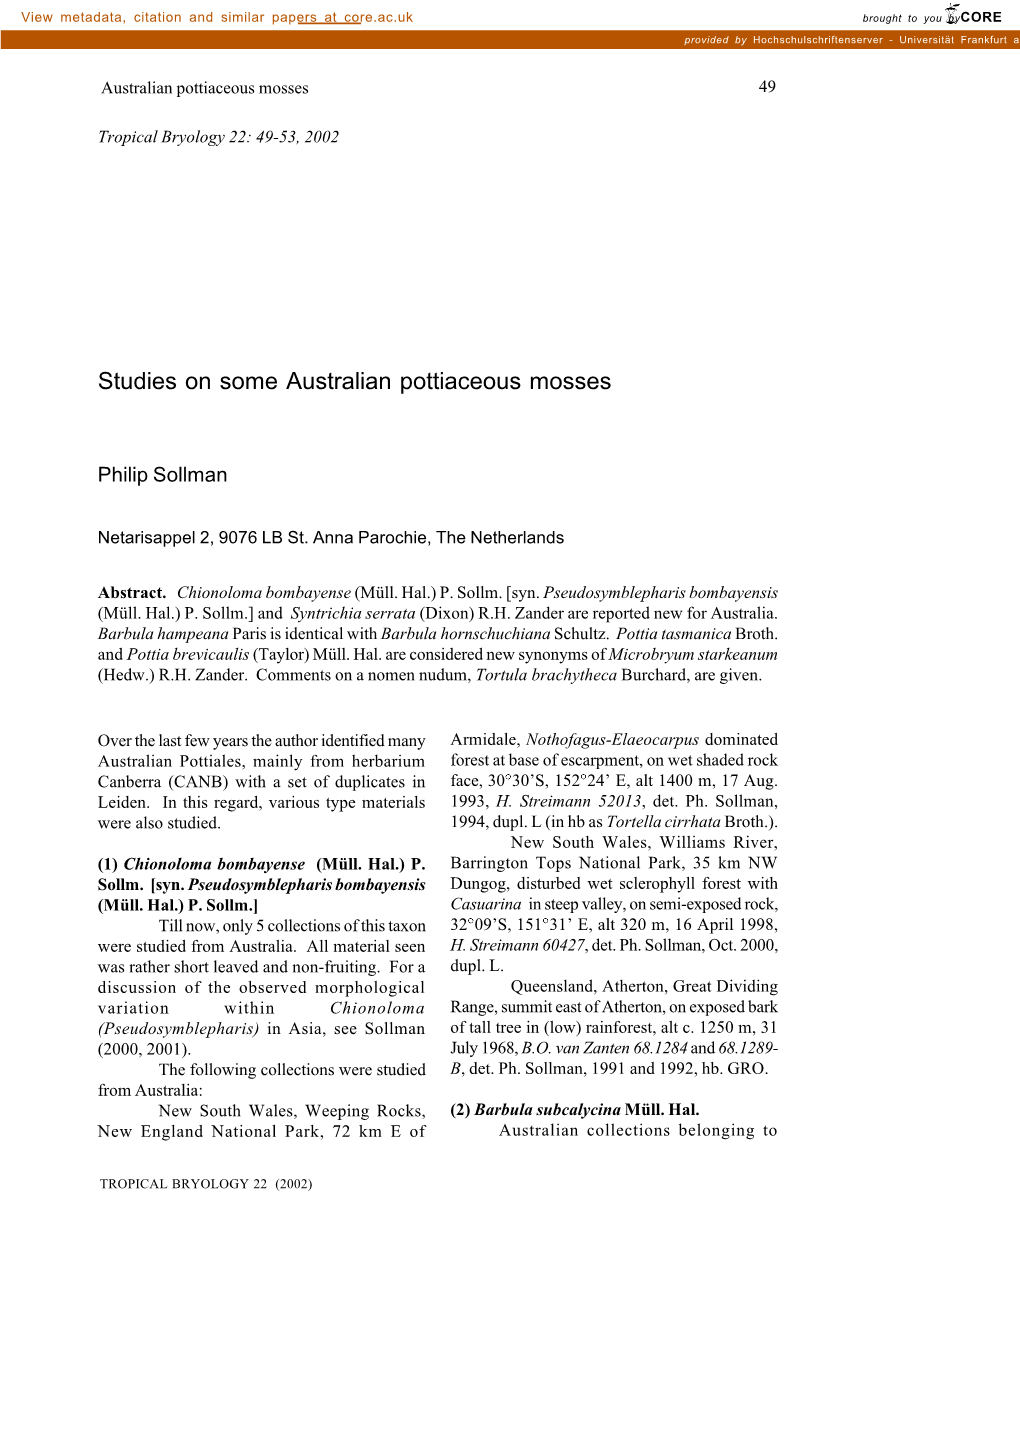 Studies on Some Australian Pottiaceous Mosses